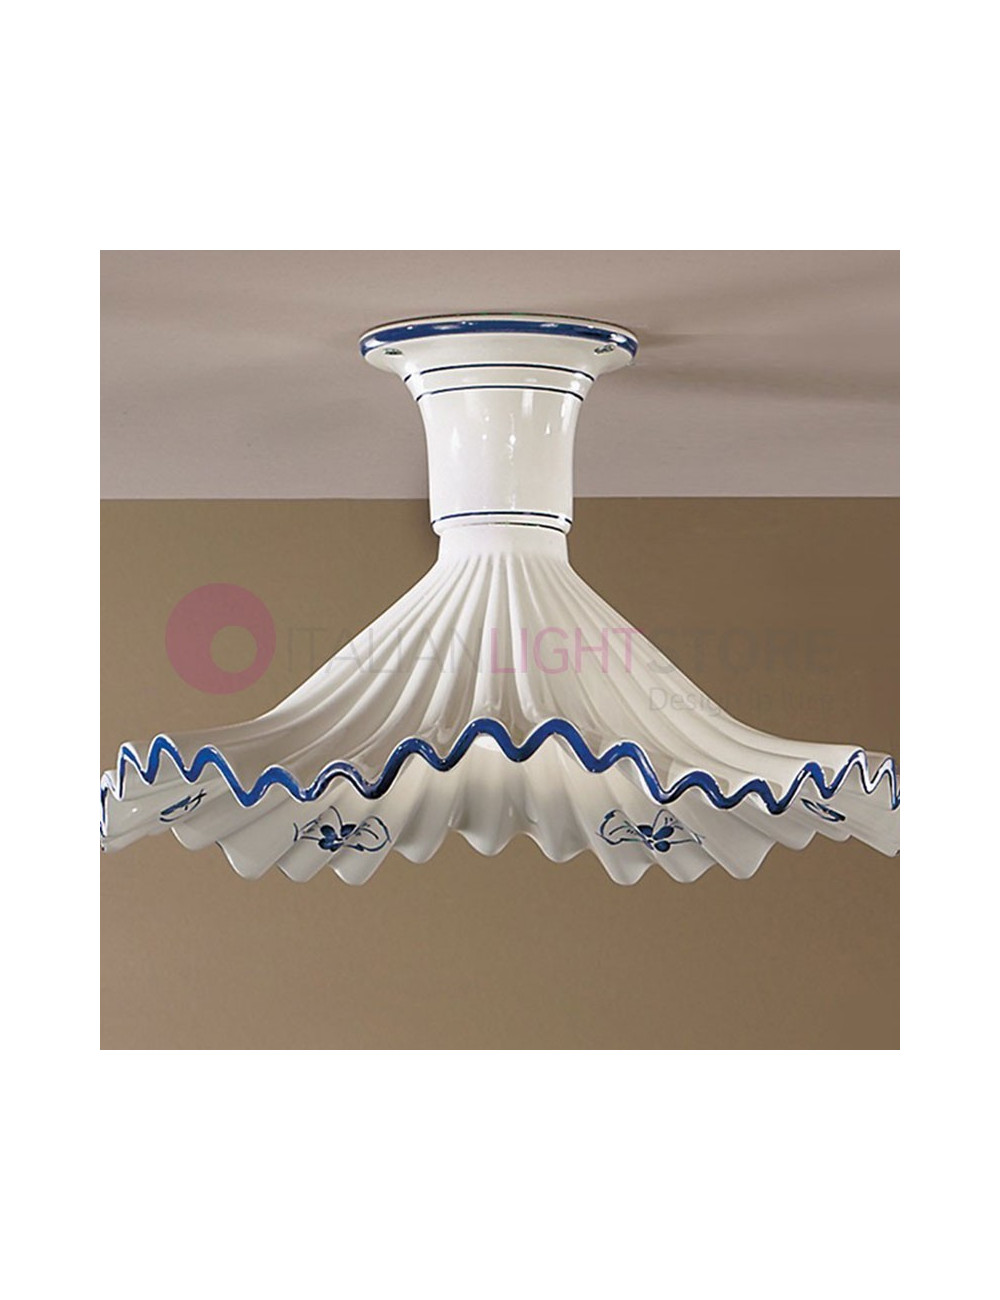 ANNA Ceiling Lamp Ceramic Rustic Style Ceiling Lamp